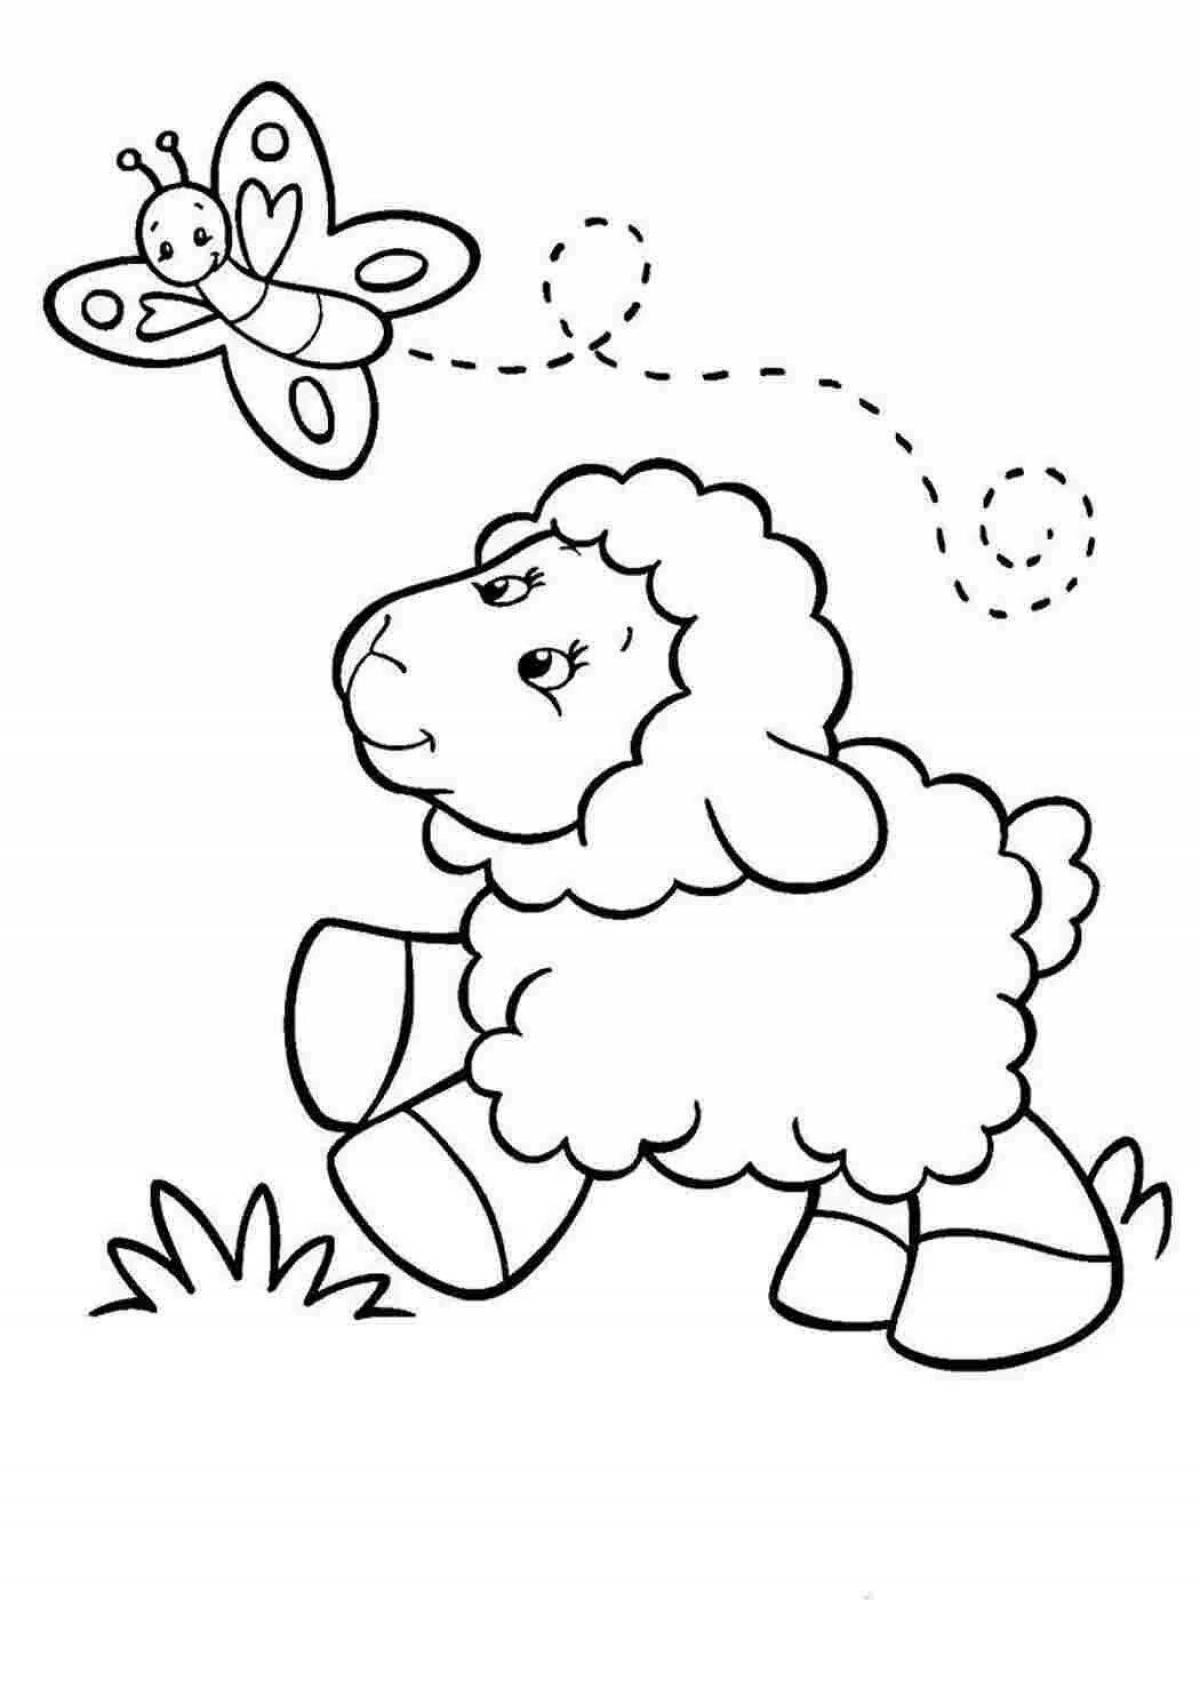 Joyful coloring lamb